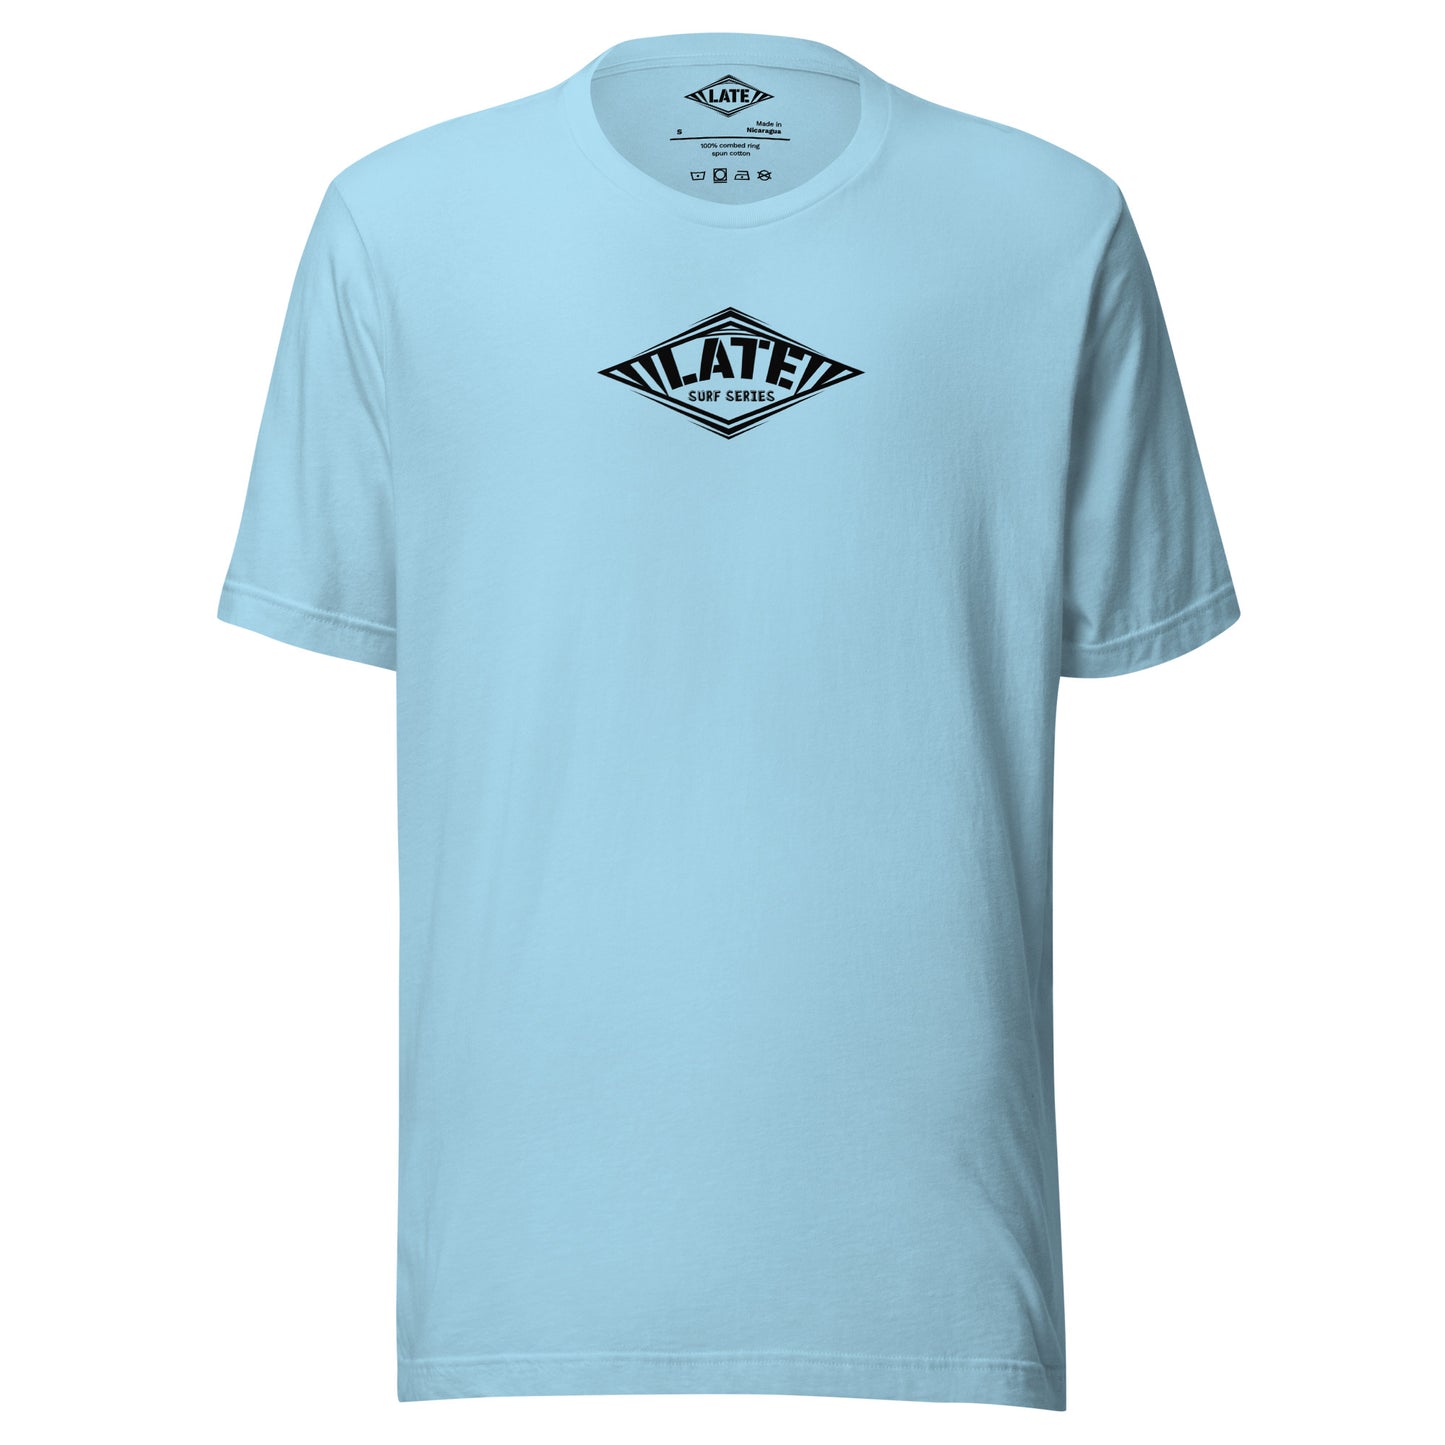 T-Shirt Take On The Elements style hurley texte surf series, et logo Late tshirt de face couleur bleu océan